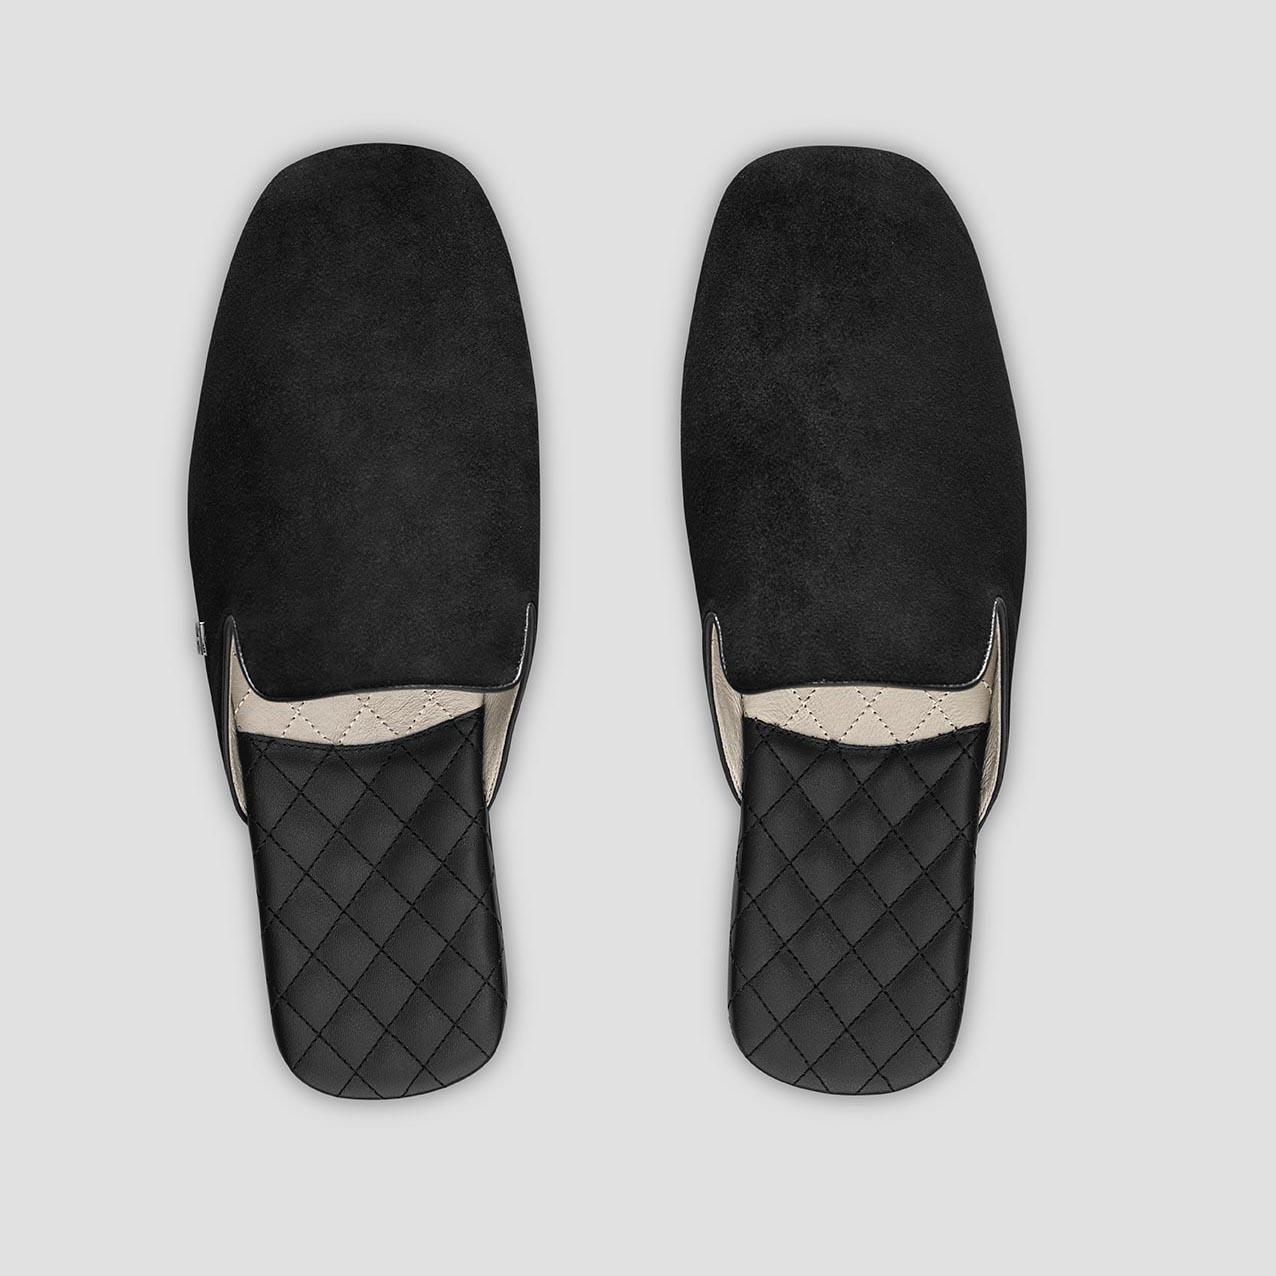 Тапочки Togas Реон черные мужские кожаные, размер 44-45 реснички набор 2 шт размер 1 шт 20 × 1 см чёрный